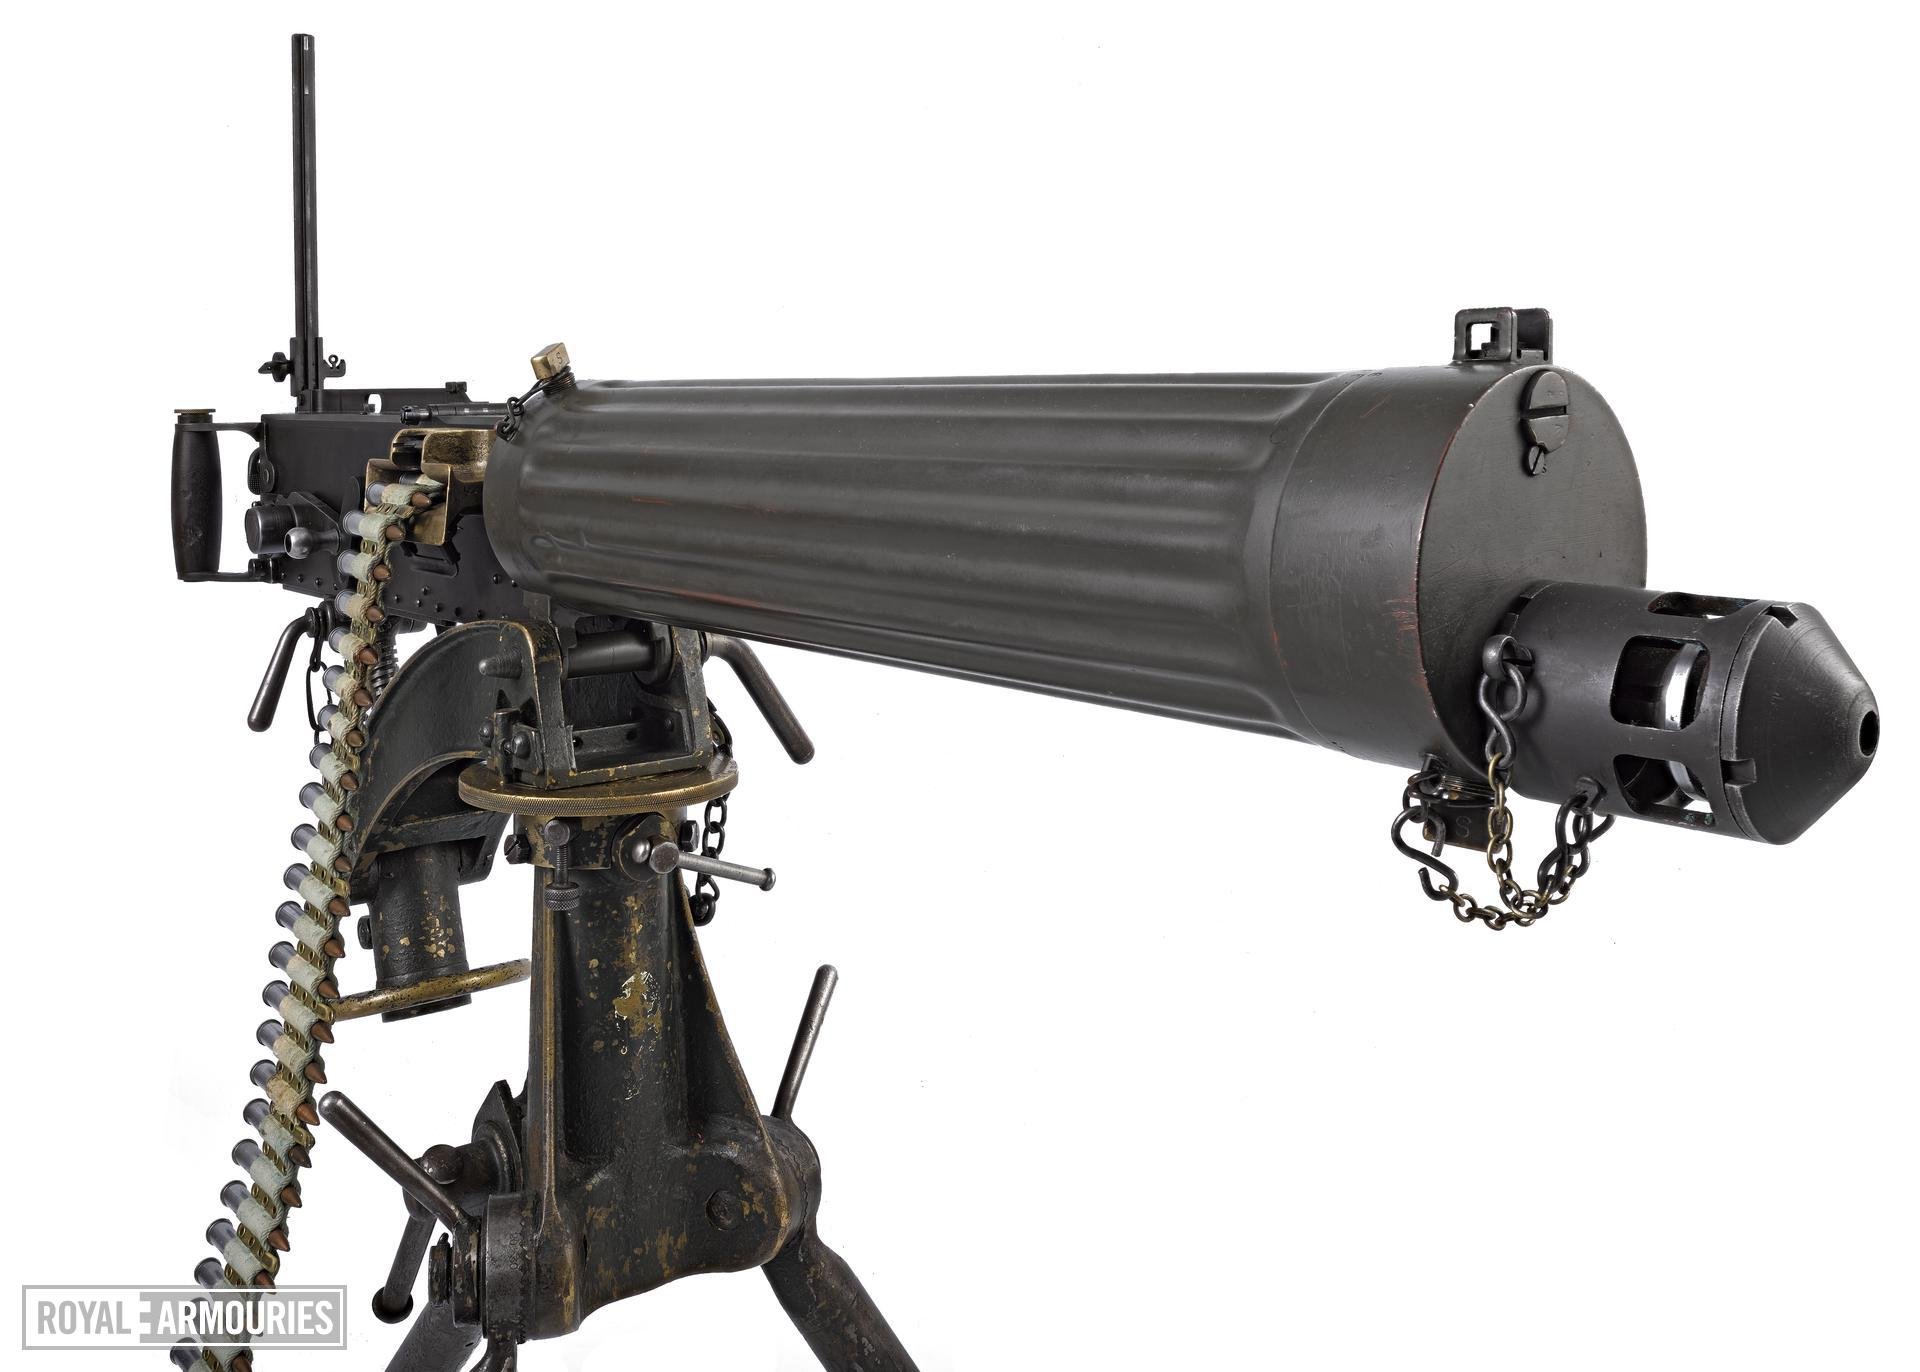 Vickers-Maxim machine gun, Mark I (1912)(3).jpg